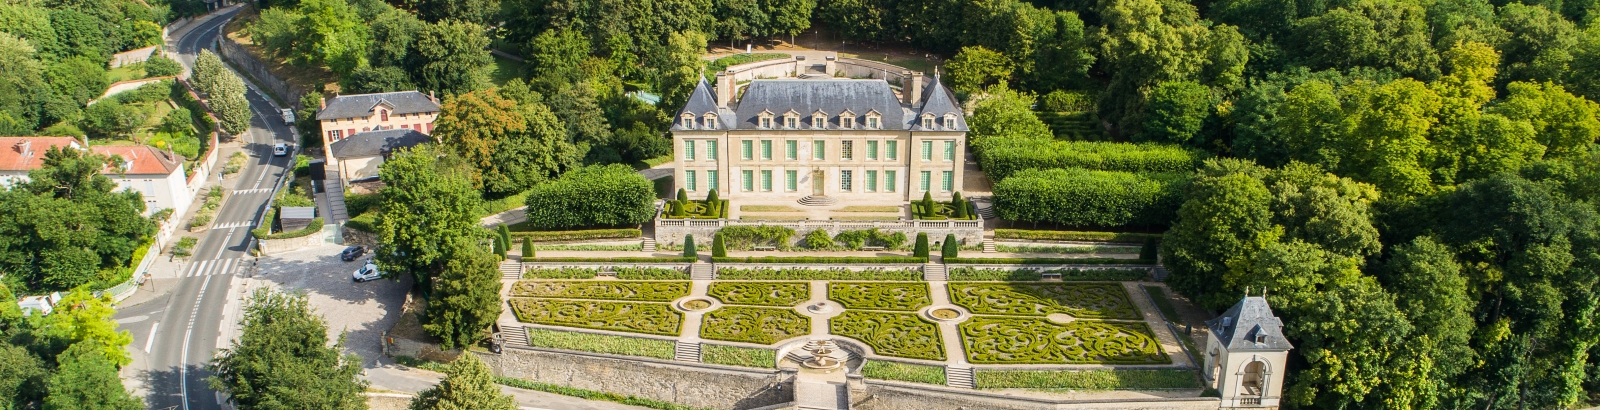 Photo du Château d'Auvers son jardin à la française et ses alentours prise en drône depuis le ciel